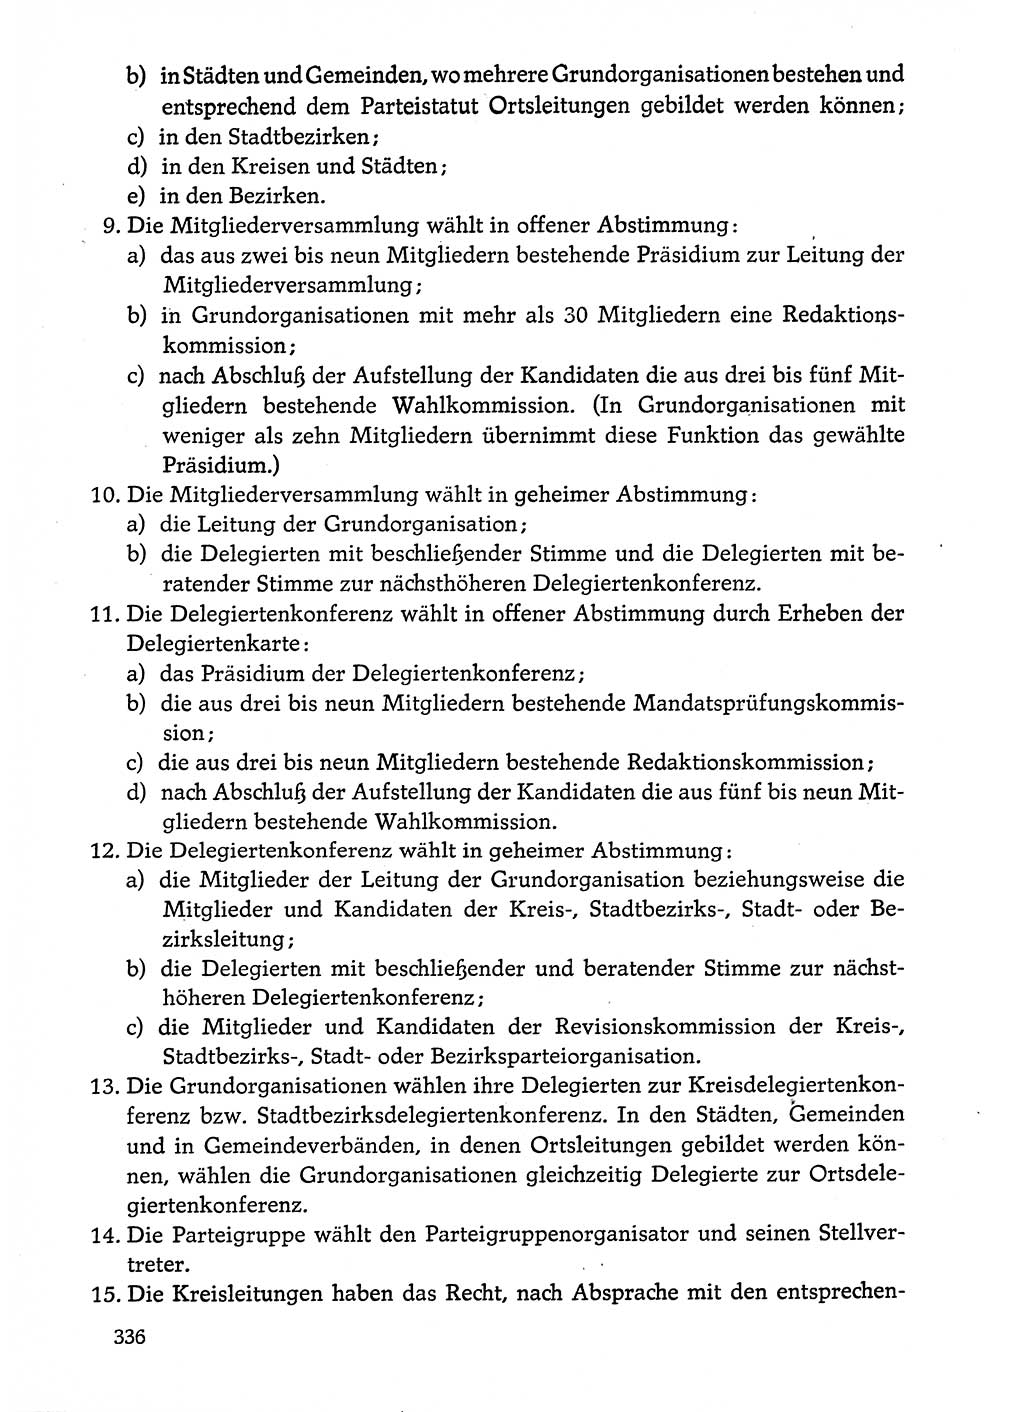 Dokumente der Sozialistischen Einheitspartei Deutschlands (SED) [Deutsche Demokratische Republik (DDR)] 1974-1975, Seite 336 (Dok. SED DDR 1978, Bd. ⅩⅤ, S. 336)